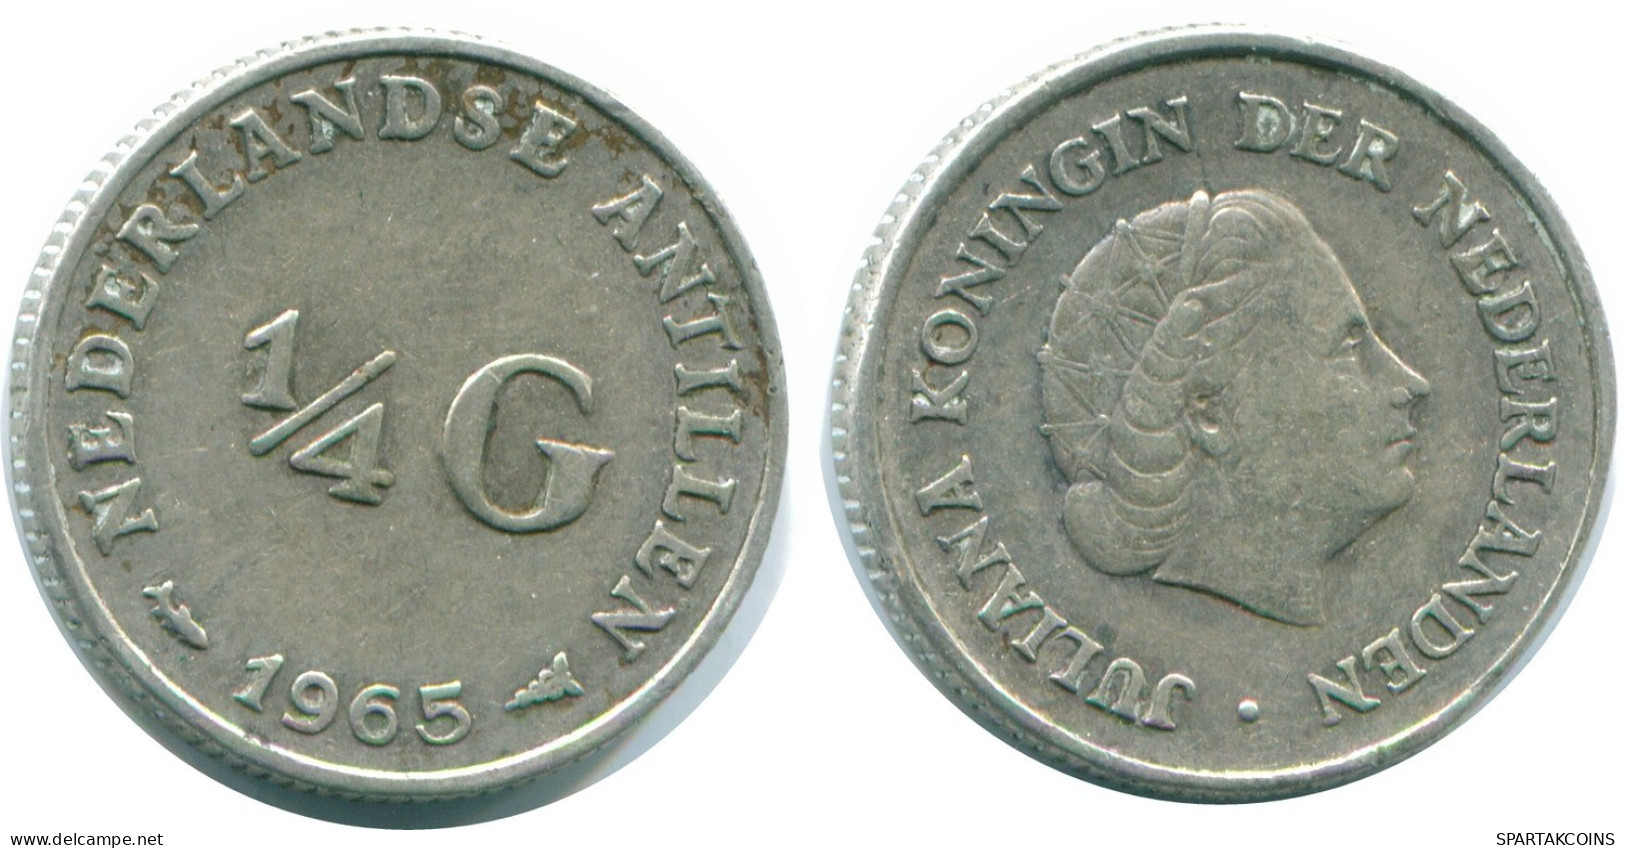 1/4 GULDEN 1965 NIEDERLÄNDISCHE ANTILLEN SILBER Koloniale Münze #NL11390.4.D.A - Antilles Néerlandaises